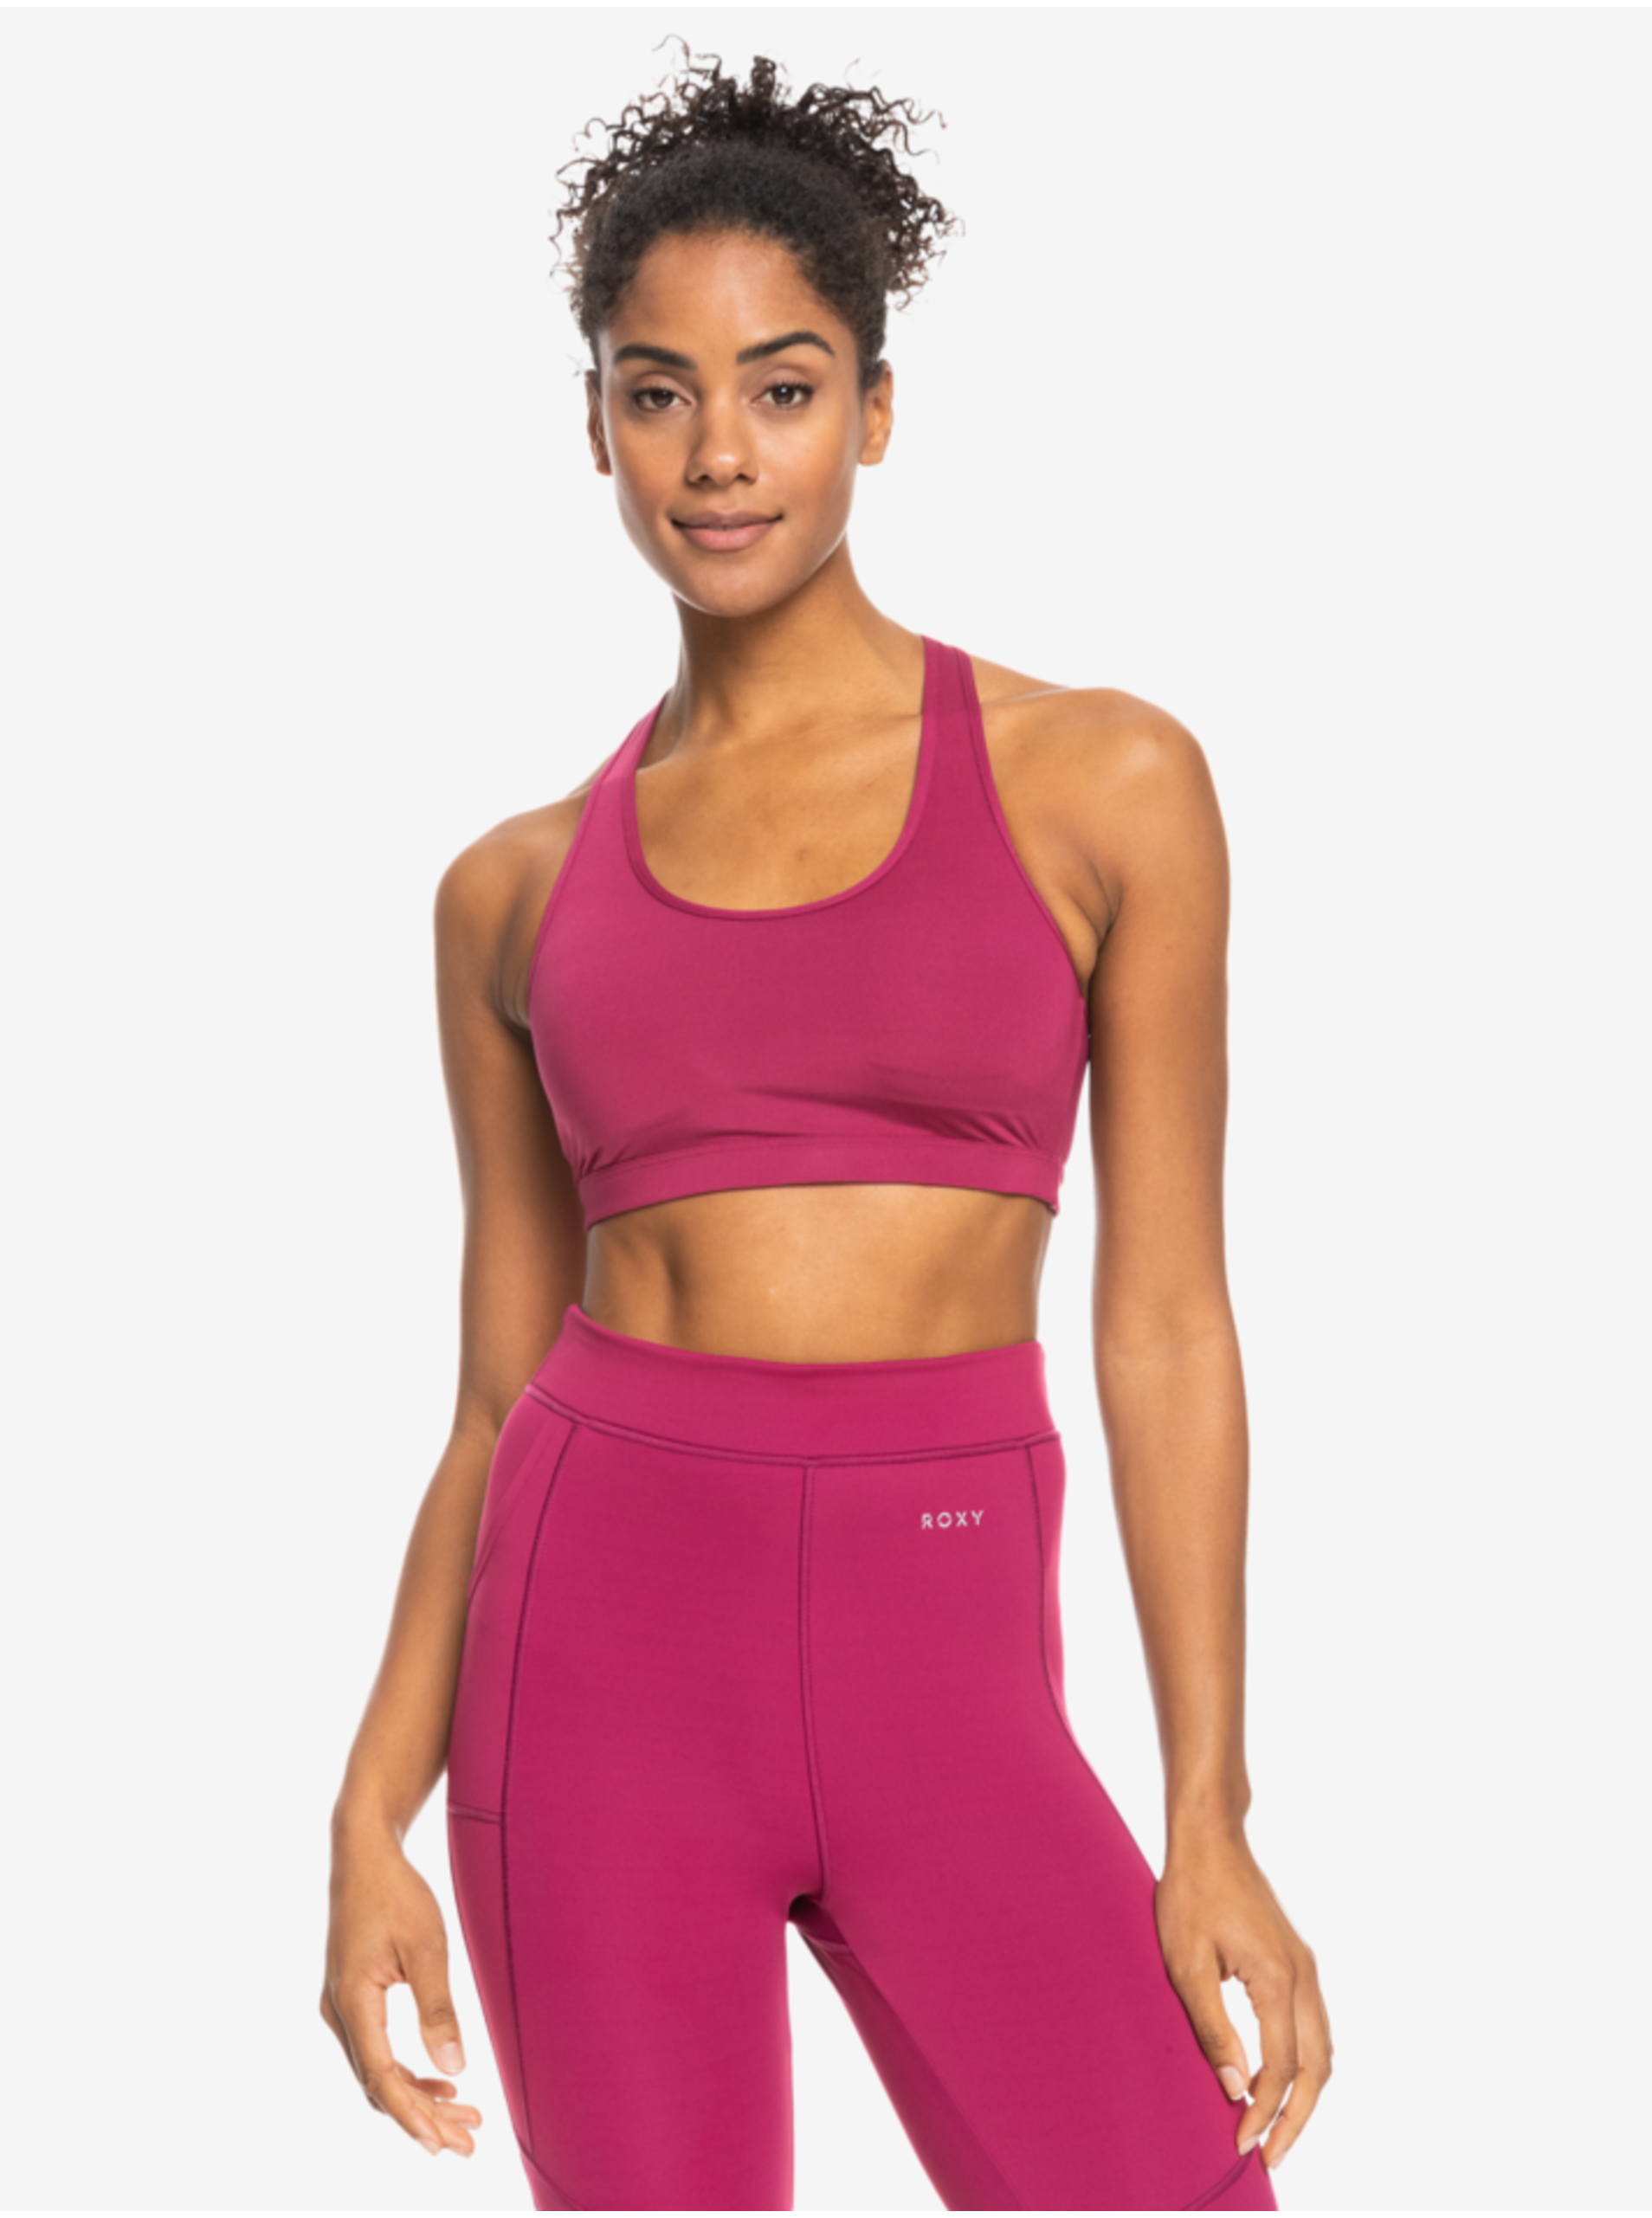 E-shop Tmavě růžová dámská sportovní podprsenka Roxy